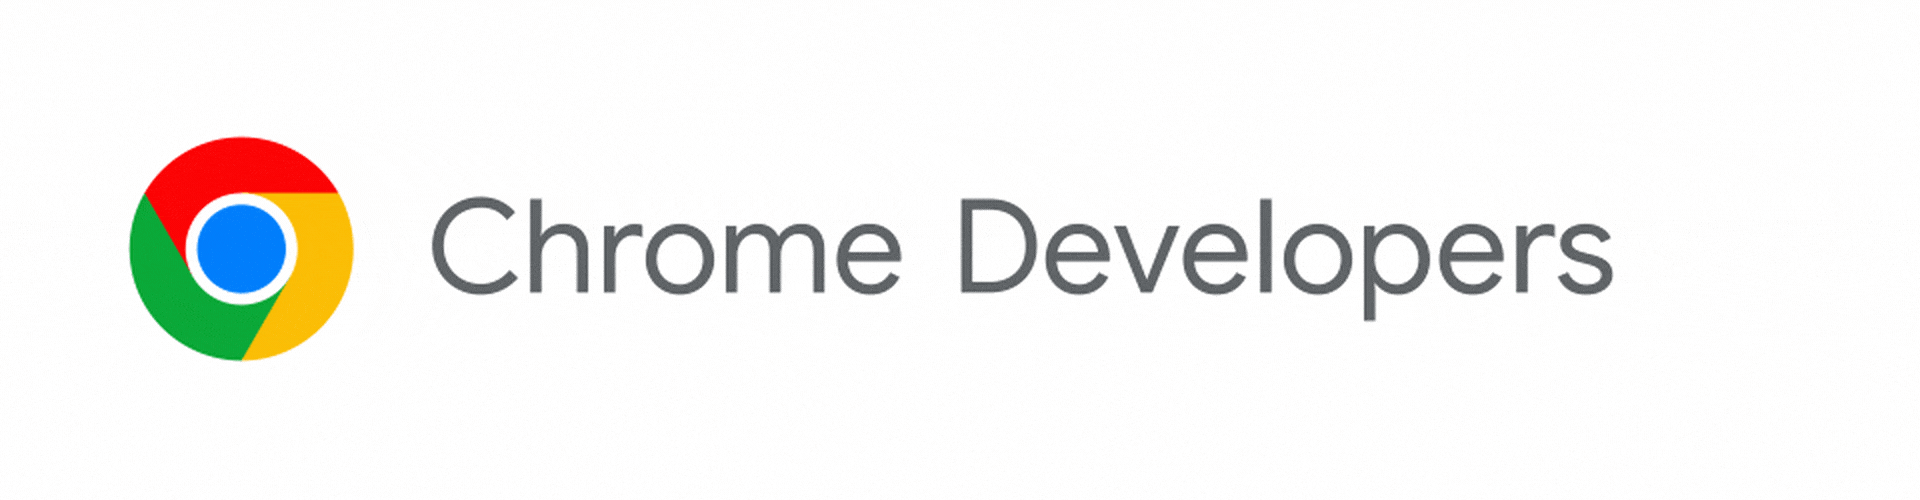 Chrome 开发者徽标即将转换为 Chrome for Developers。